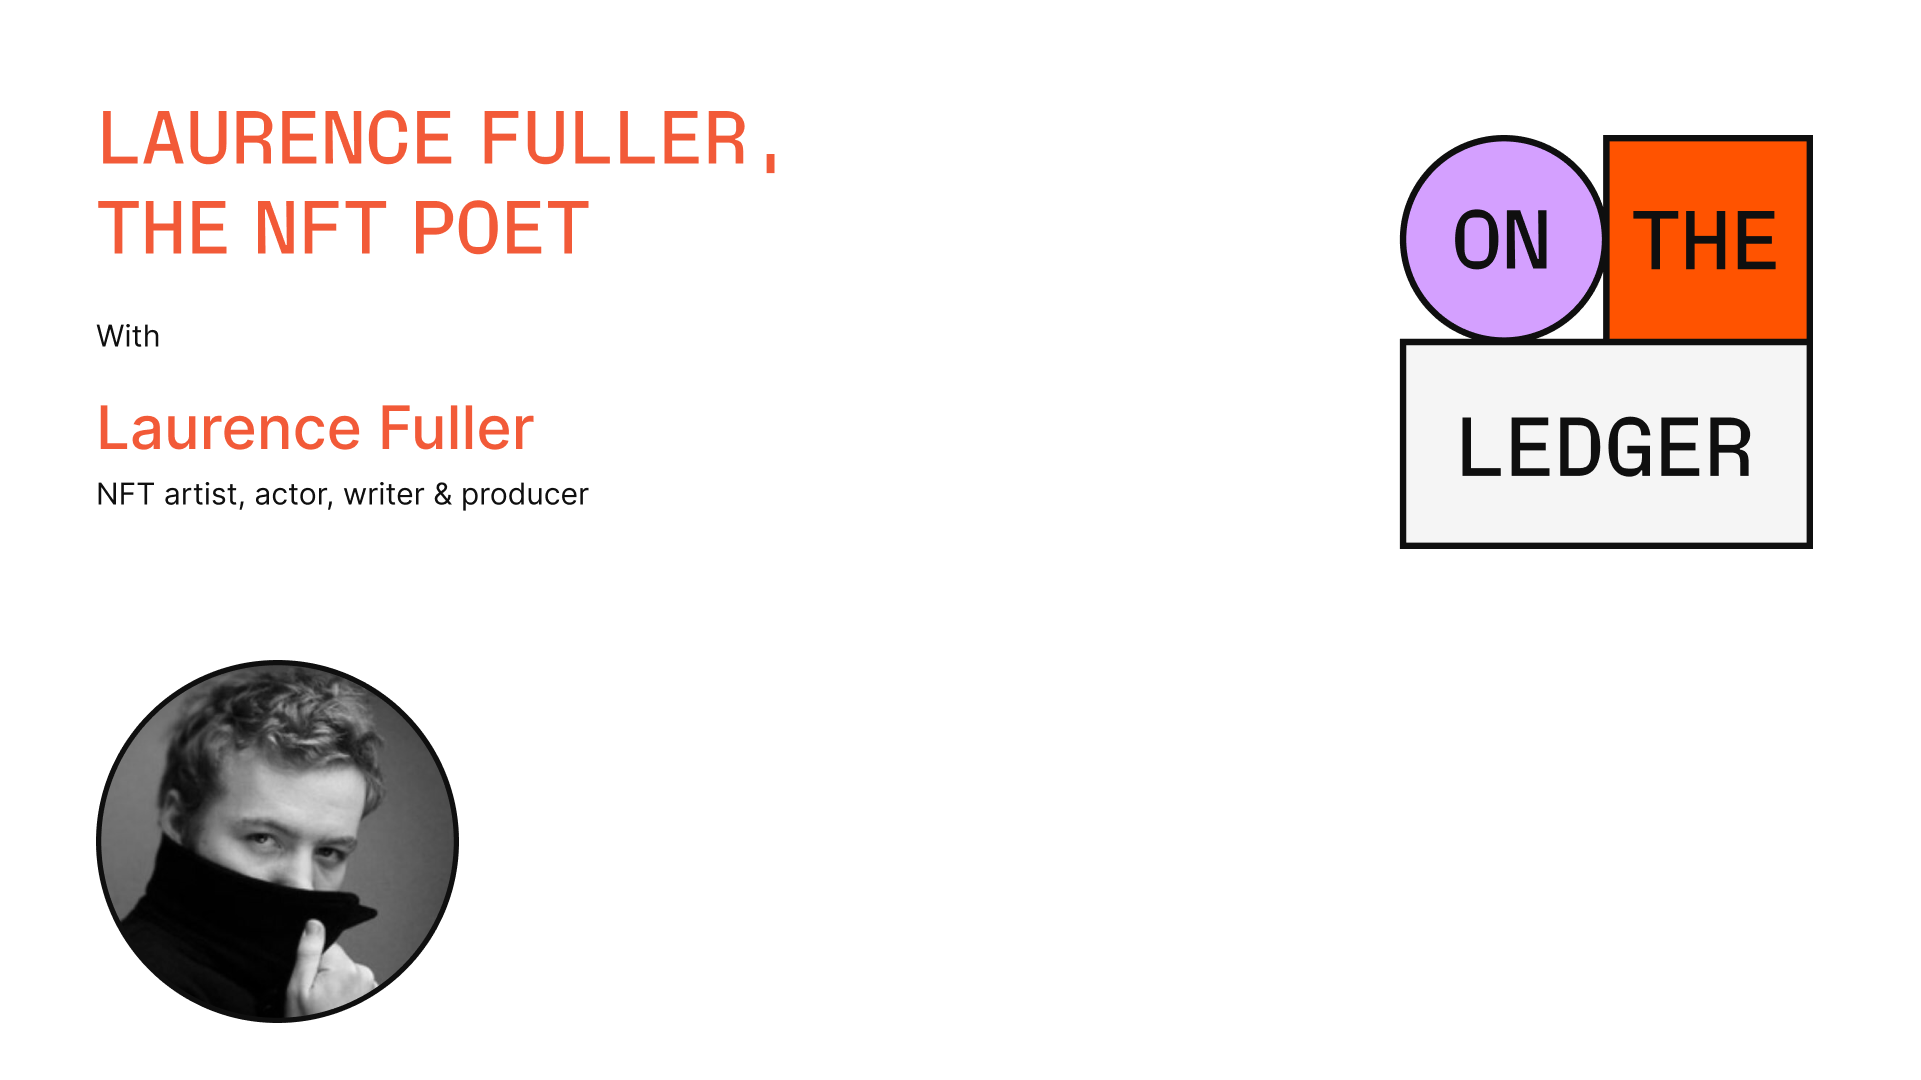 Laurence Fuller, the NFT poet